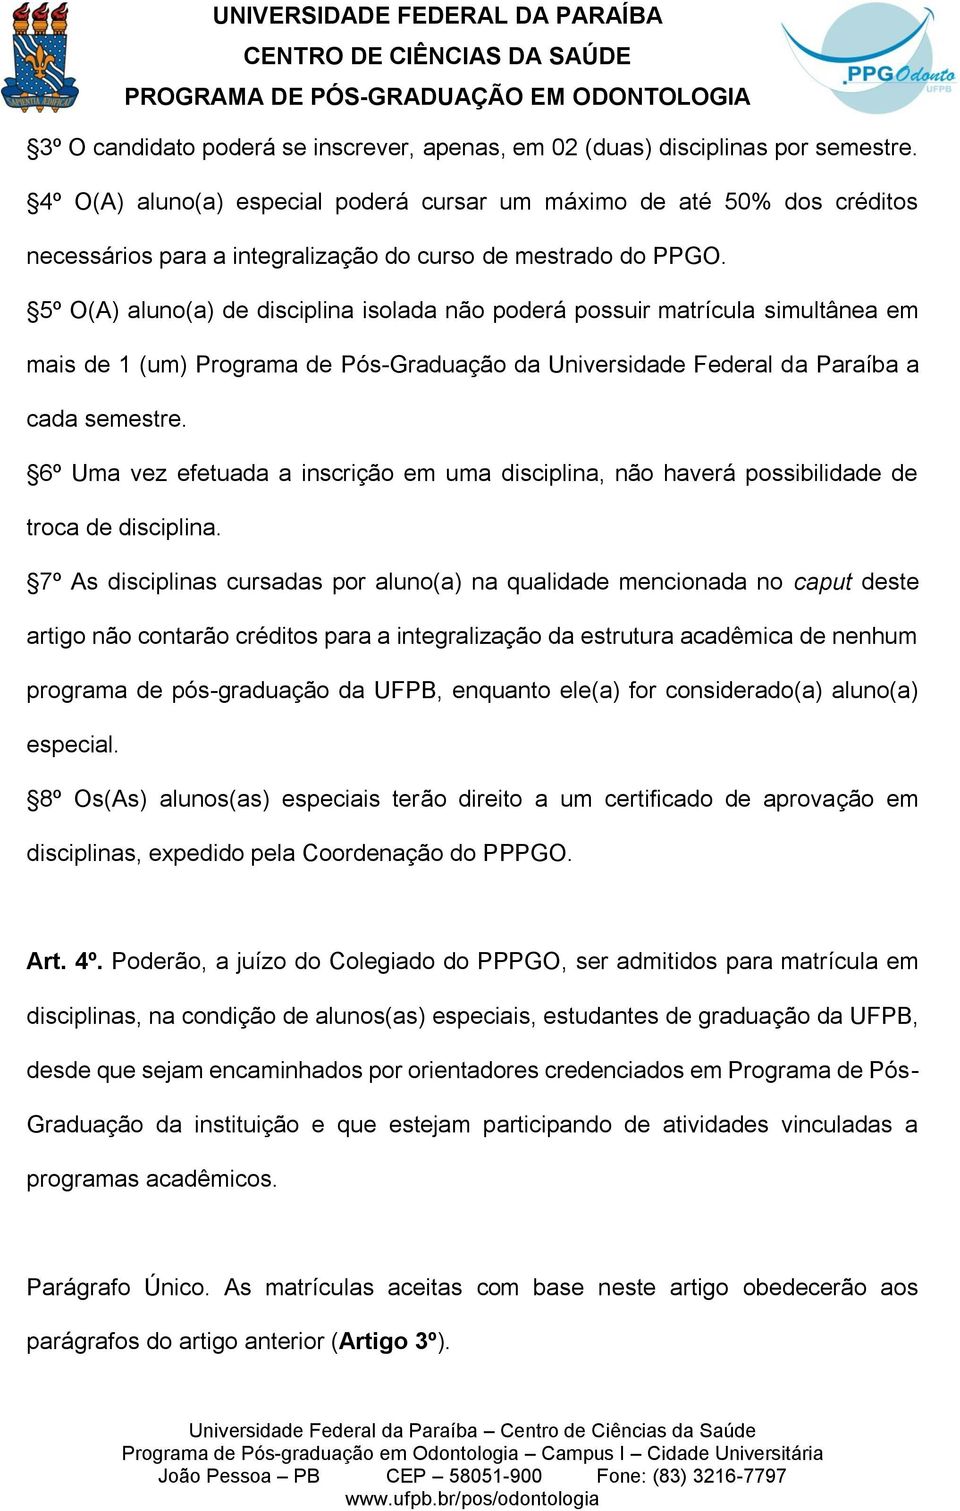 5º O(A) aluno(a) de disciplina isolada não poderá possuir matrícula simultânea em mais de 1 (um) Programa de Pós-Graduação da Universidade Federal da Paraíba a cada semestre.